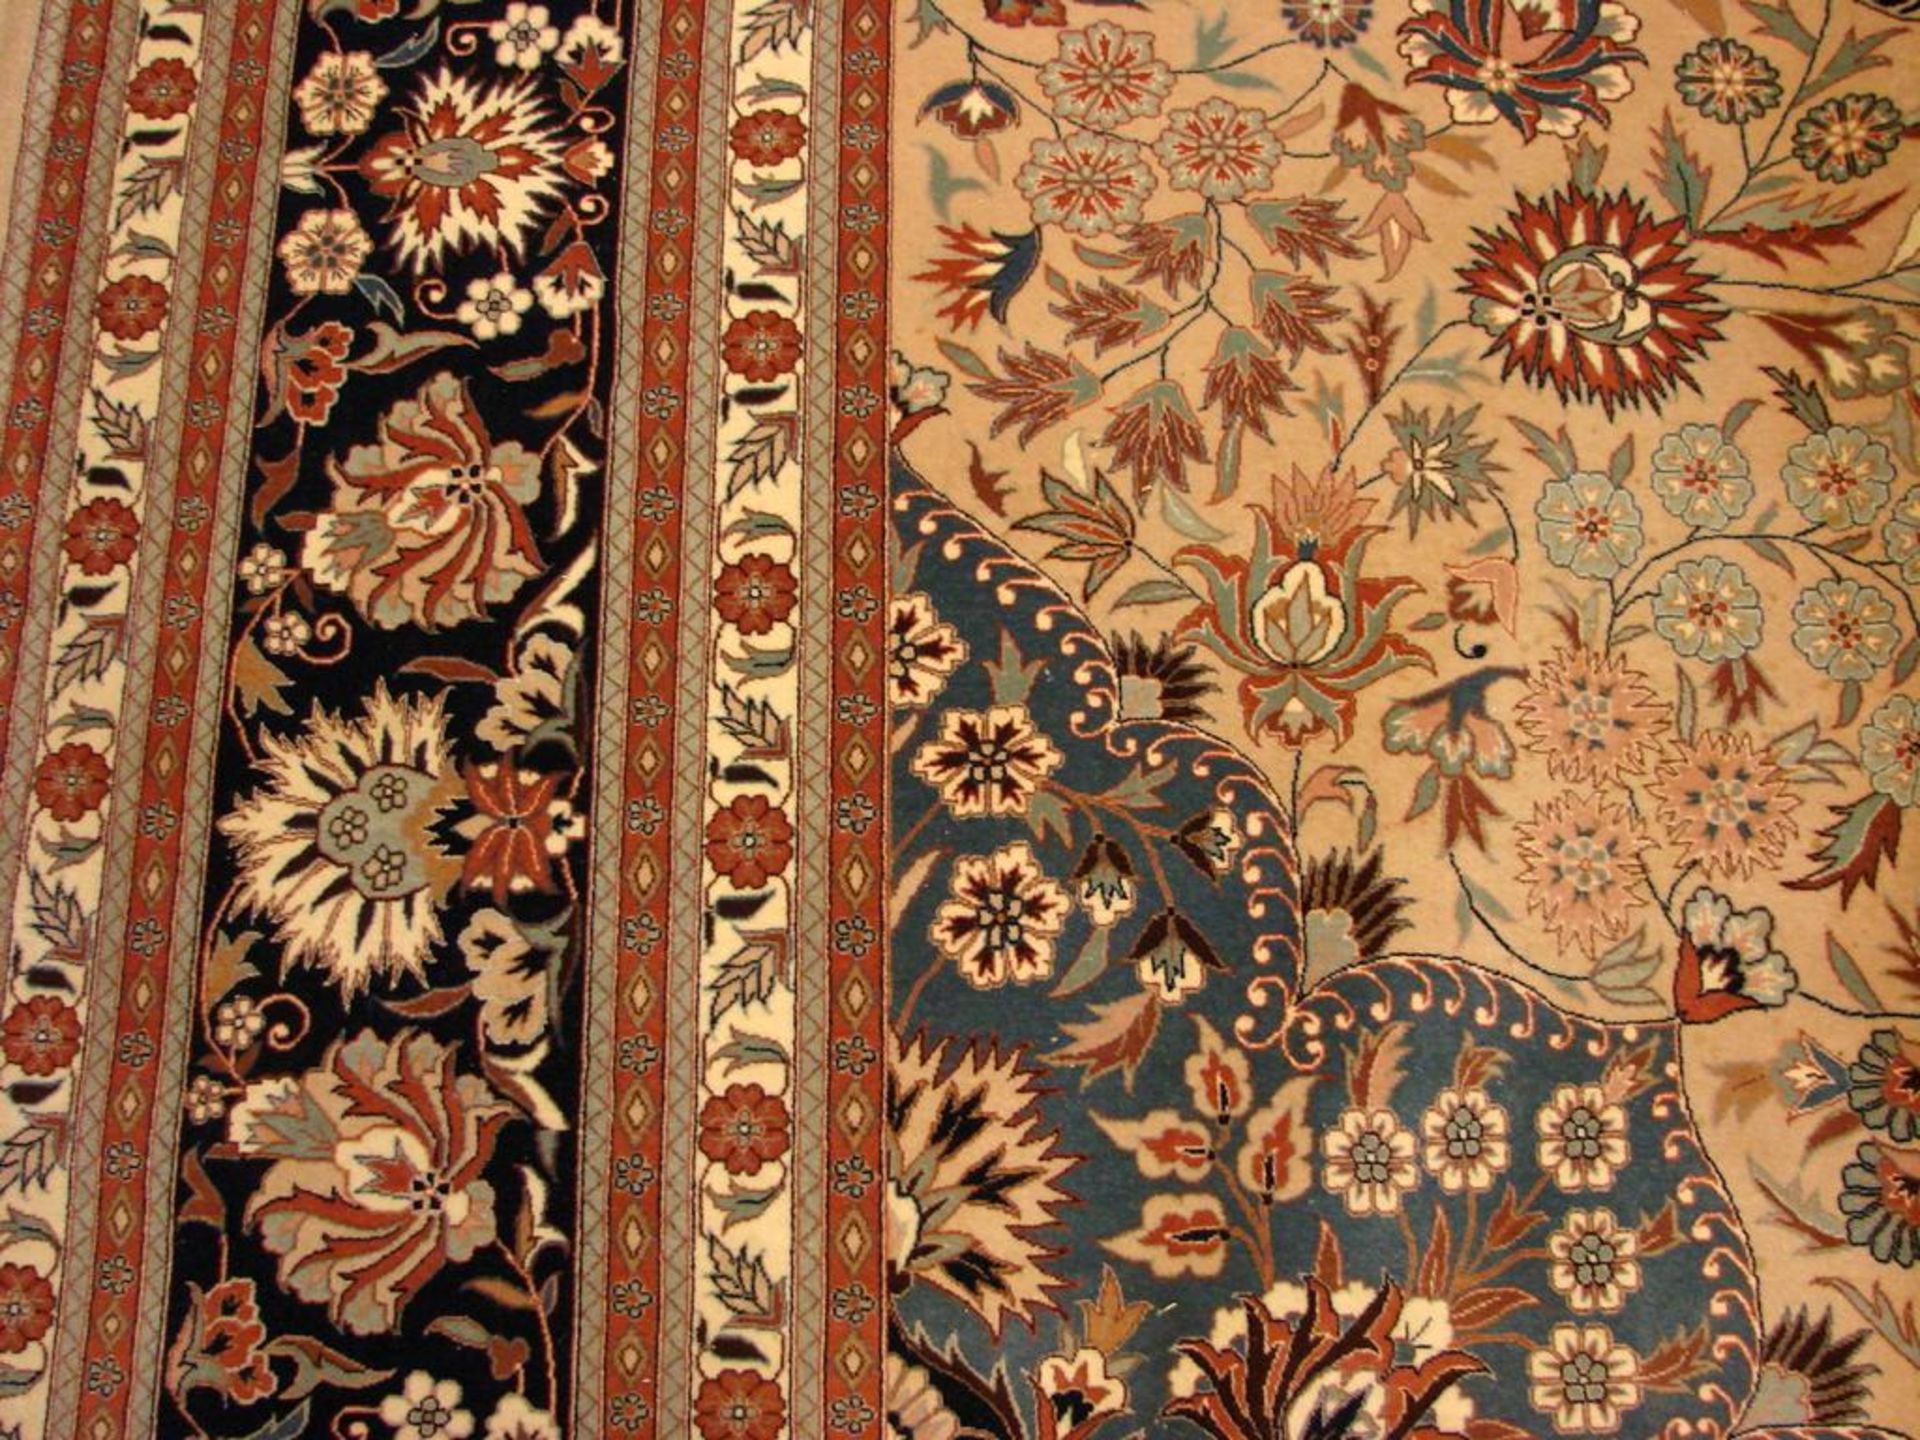 Teppich, Chinesischer Keshan, ca. 377 x 268 cm- - -22.00 % buyer's premium on the hammer price19. - Bild 3 aus 4